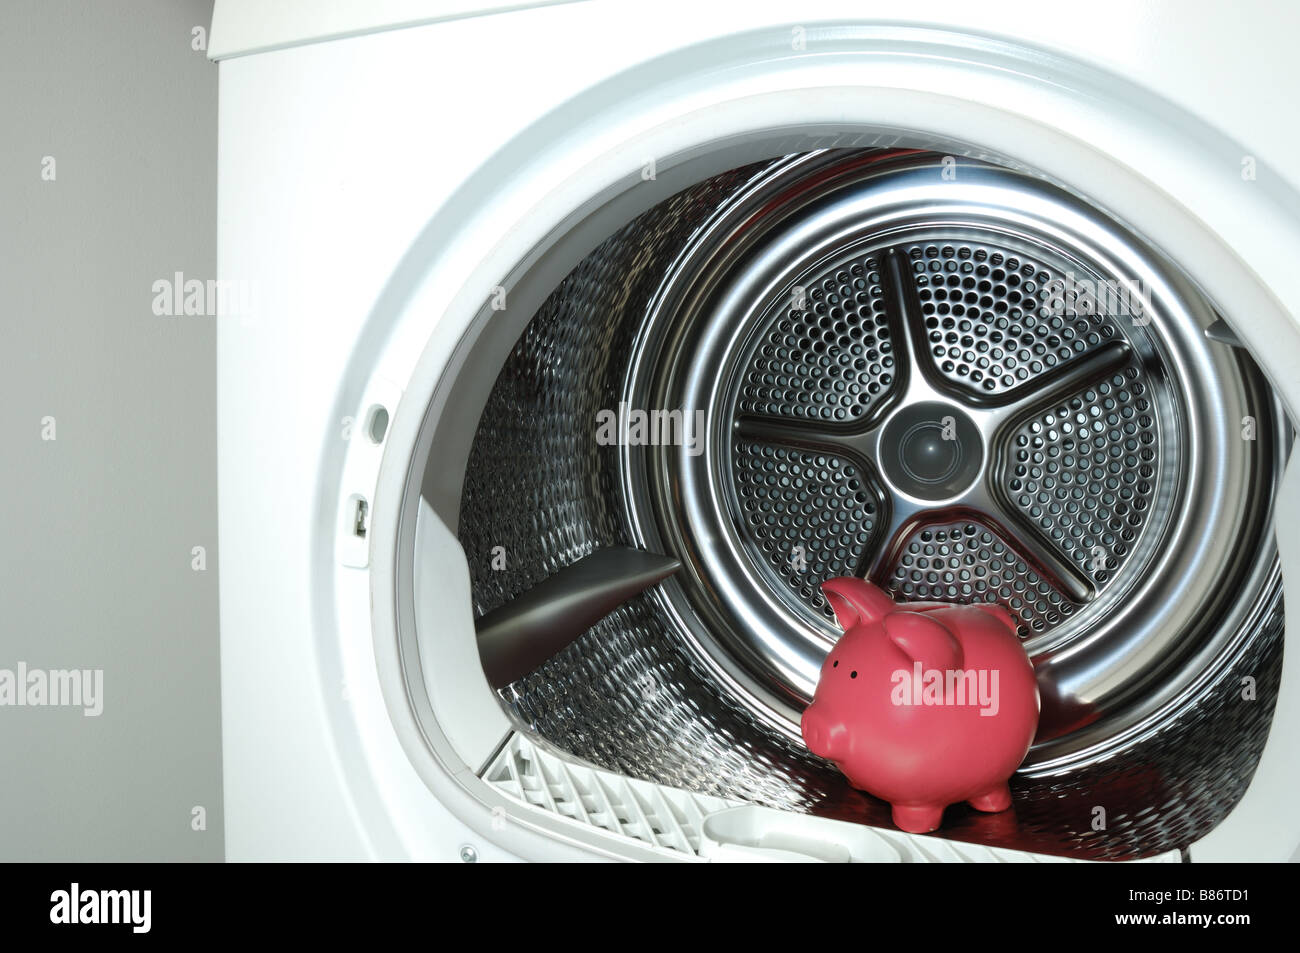 Ein rosa Sparschwein im Inneren einer Waschmaschine Wäschetrockner  Stockfotografie - Alamy